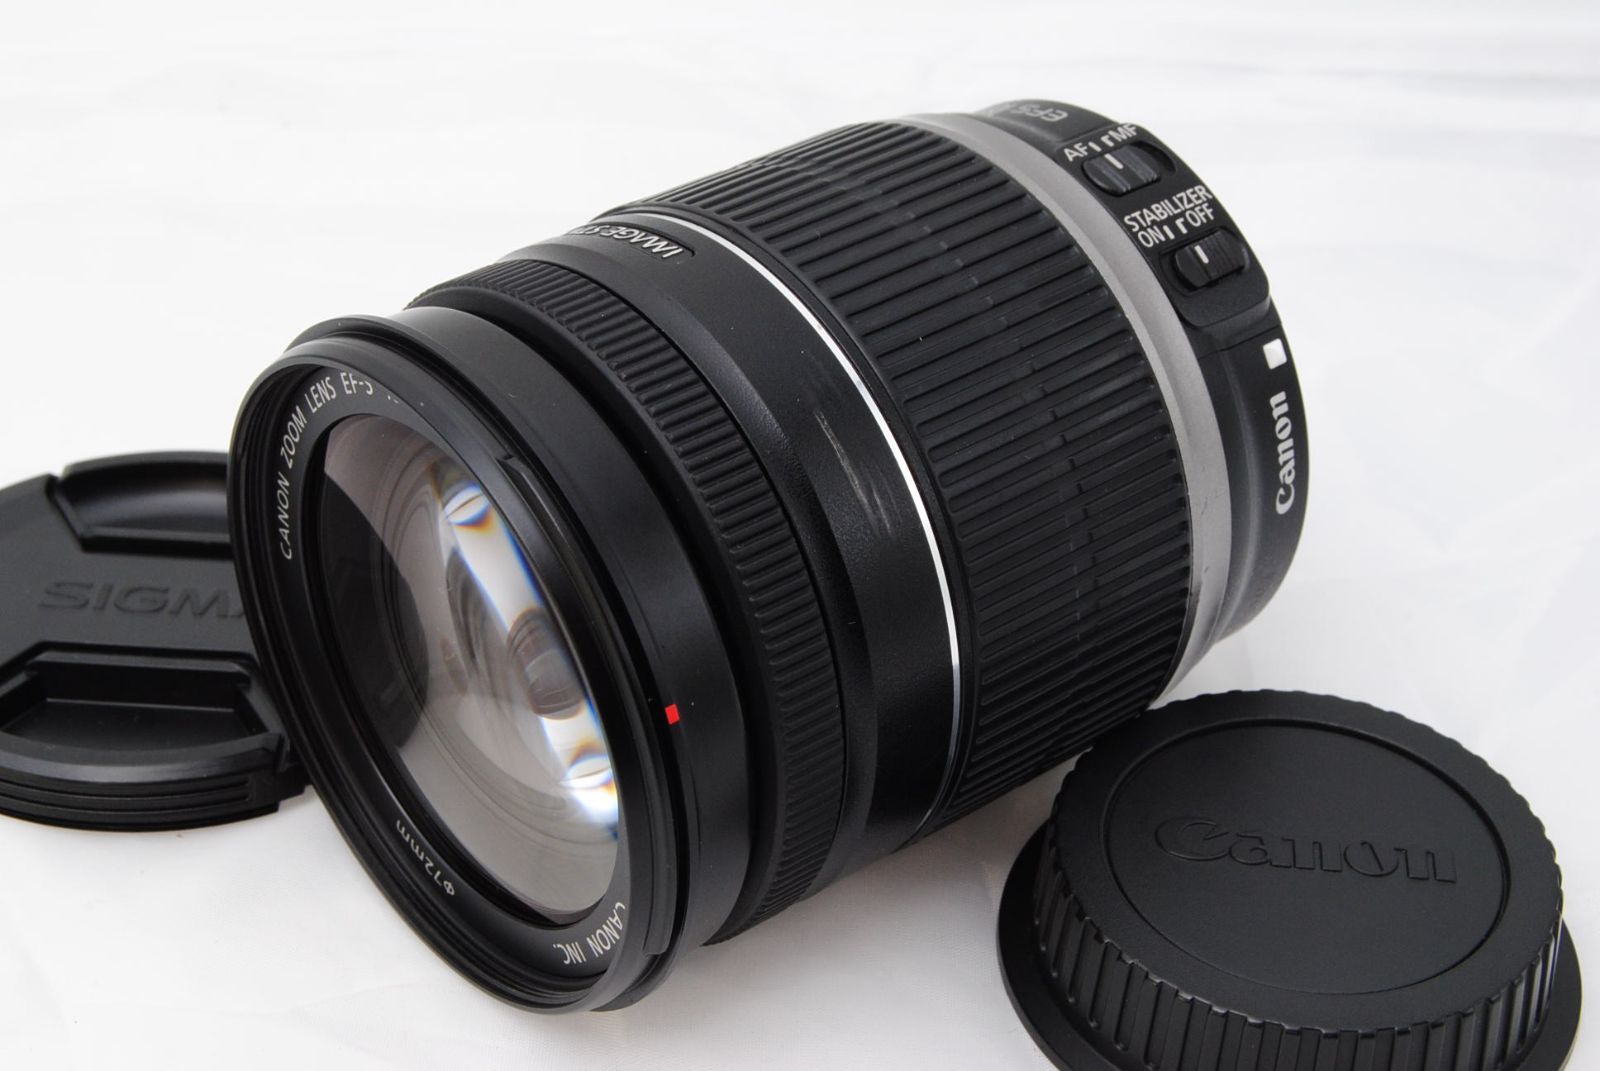 Canon 望遠ズームレンズ EF-S18-200mm F3.5-5.6 IS APS-C対応 6g7v4d0